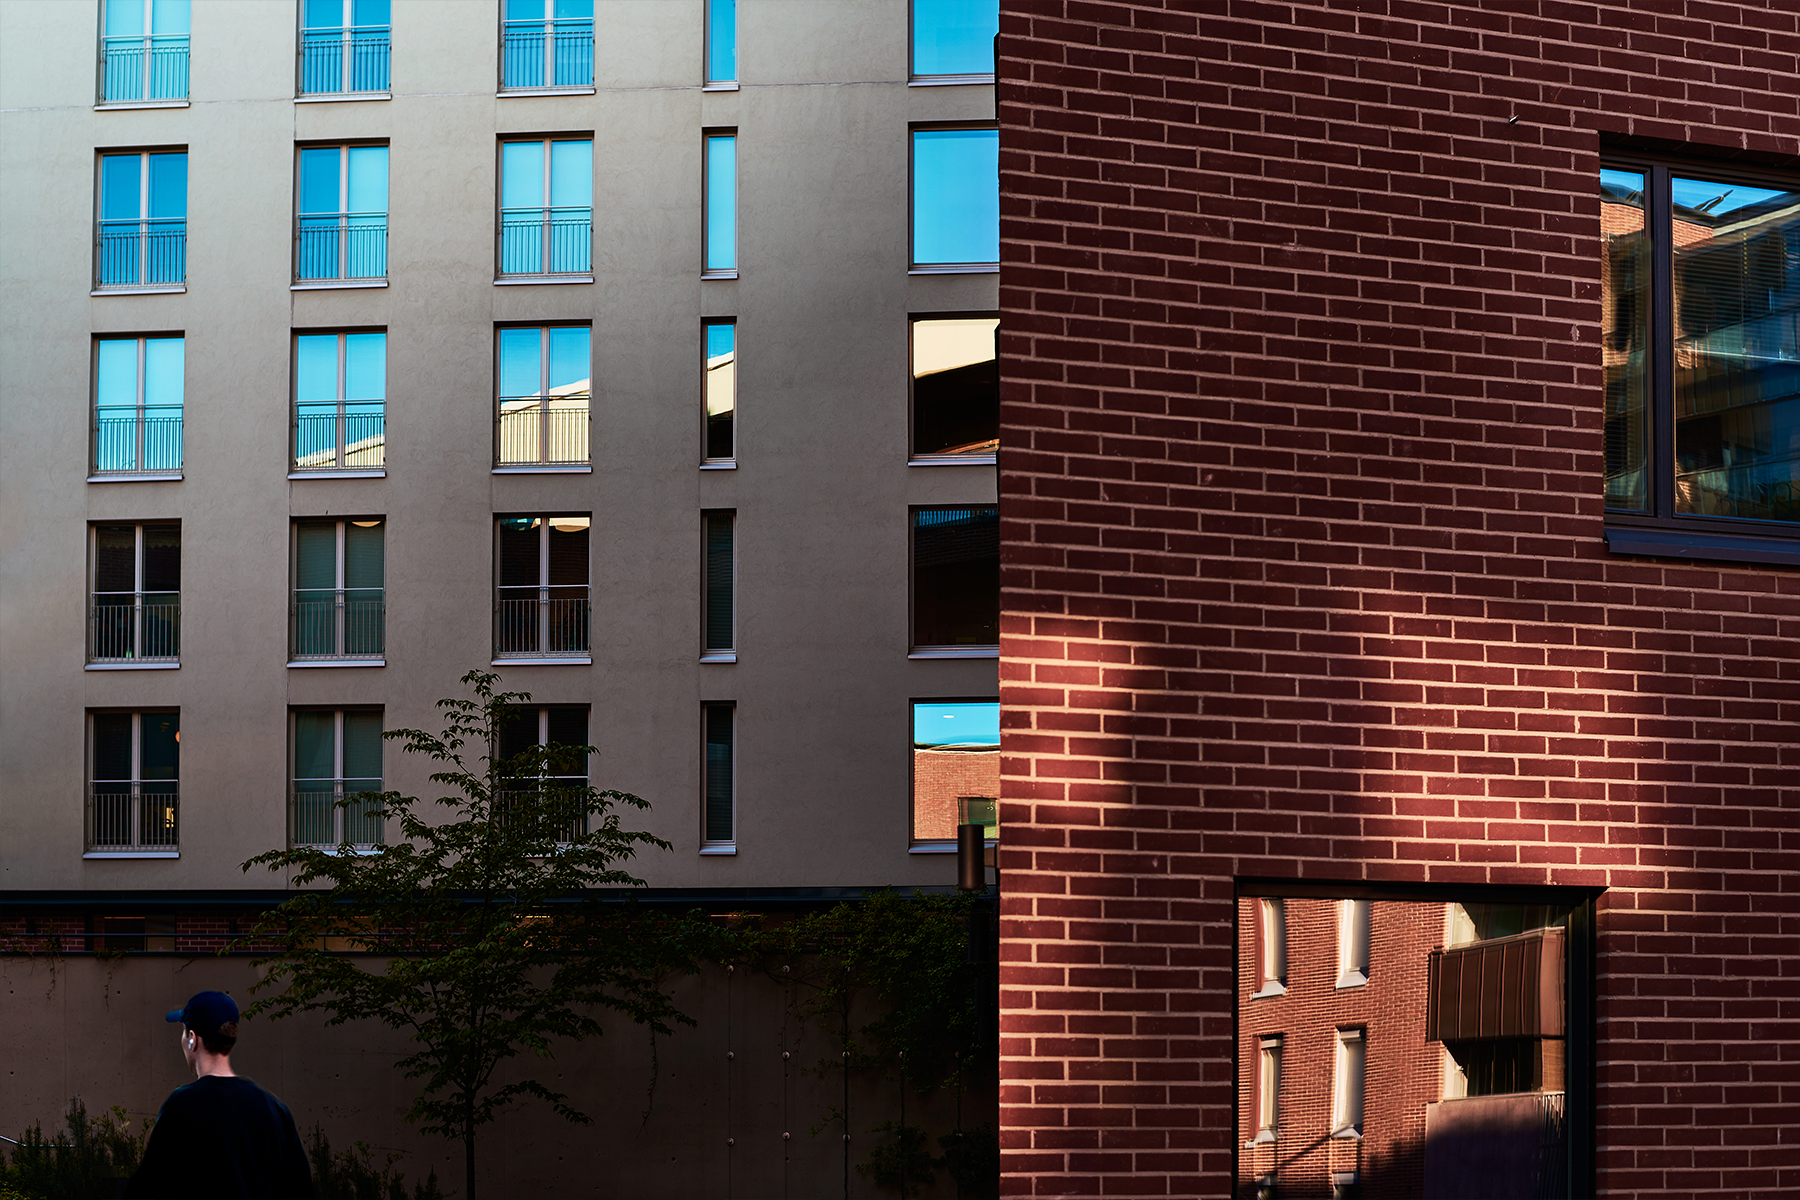 Kuvituskuva - kahden talon seiniin ja ikkunoihin heijastuu auringonvaloa.